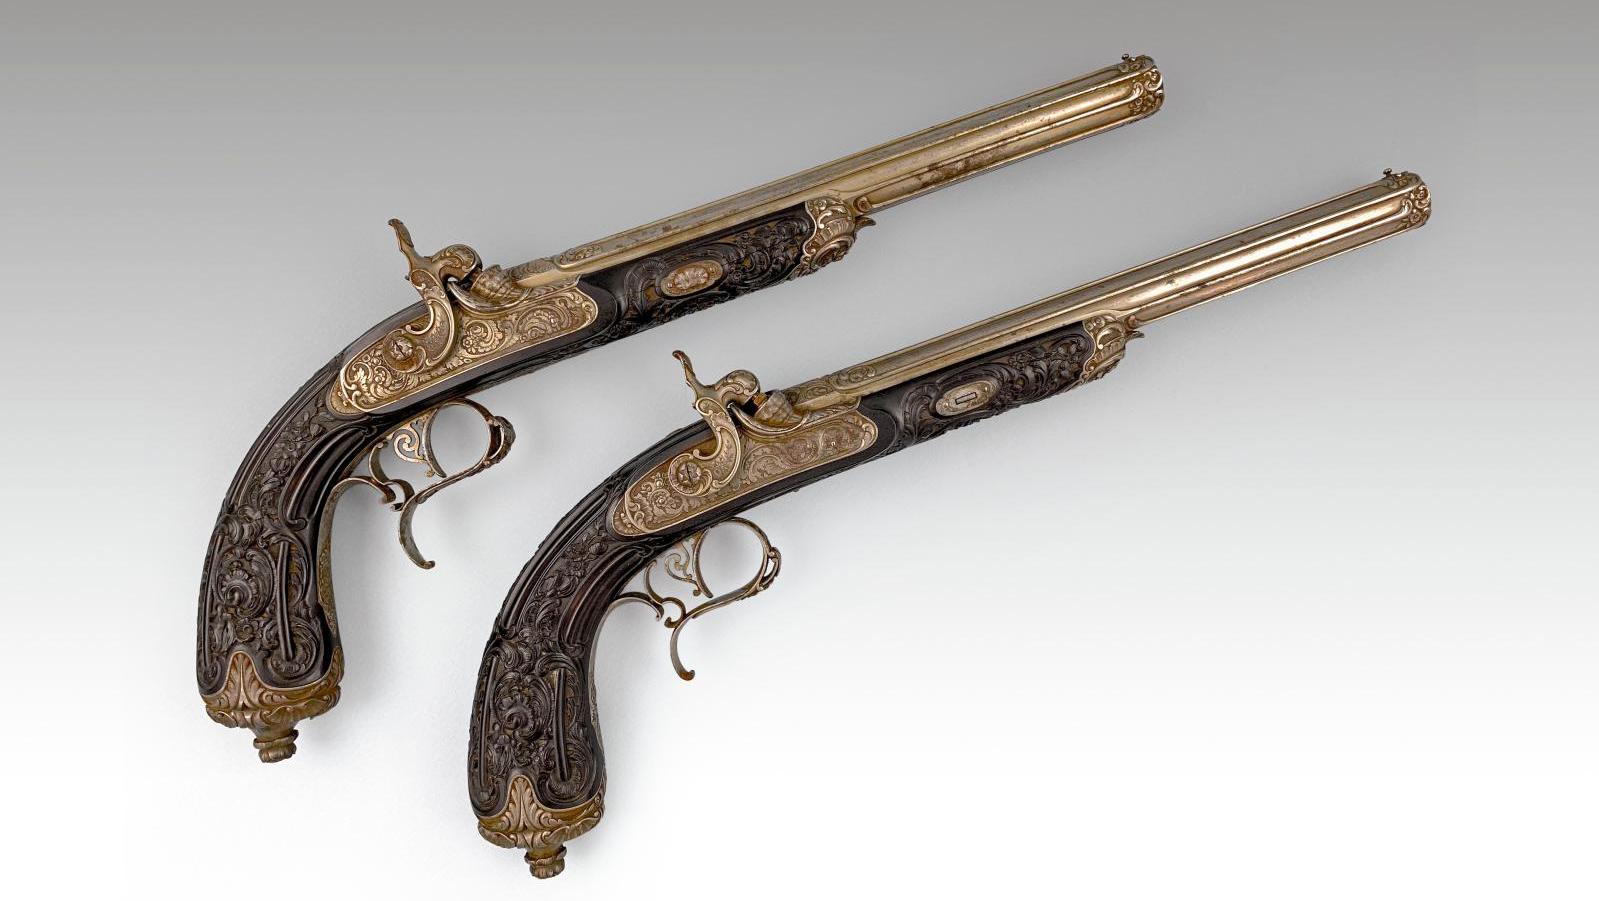 Paire de pistolets de tir à percussion de « fabrication bourgeoise », calibre 12 mm... L’histoire de France en quelques souvenirs martiaux